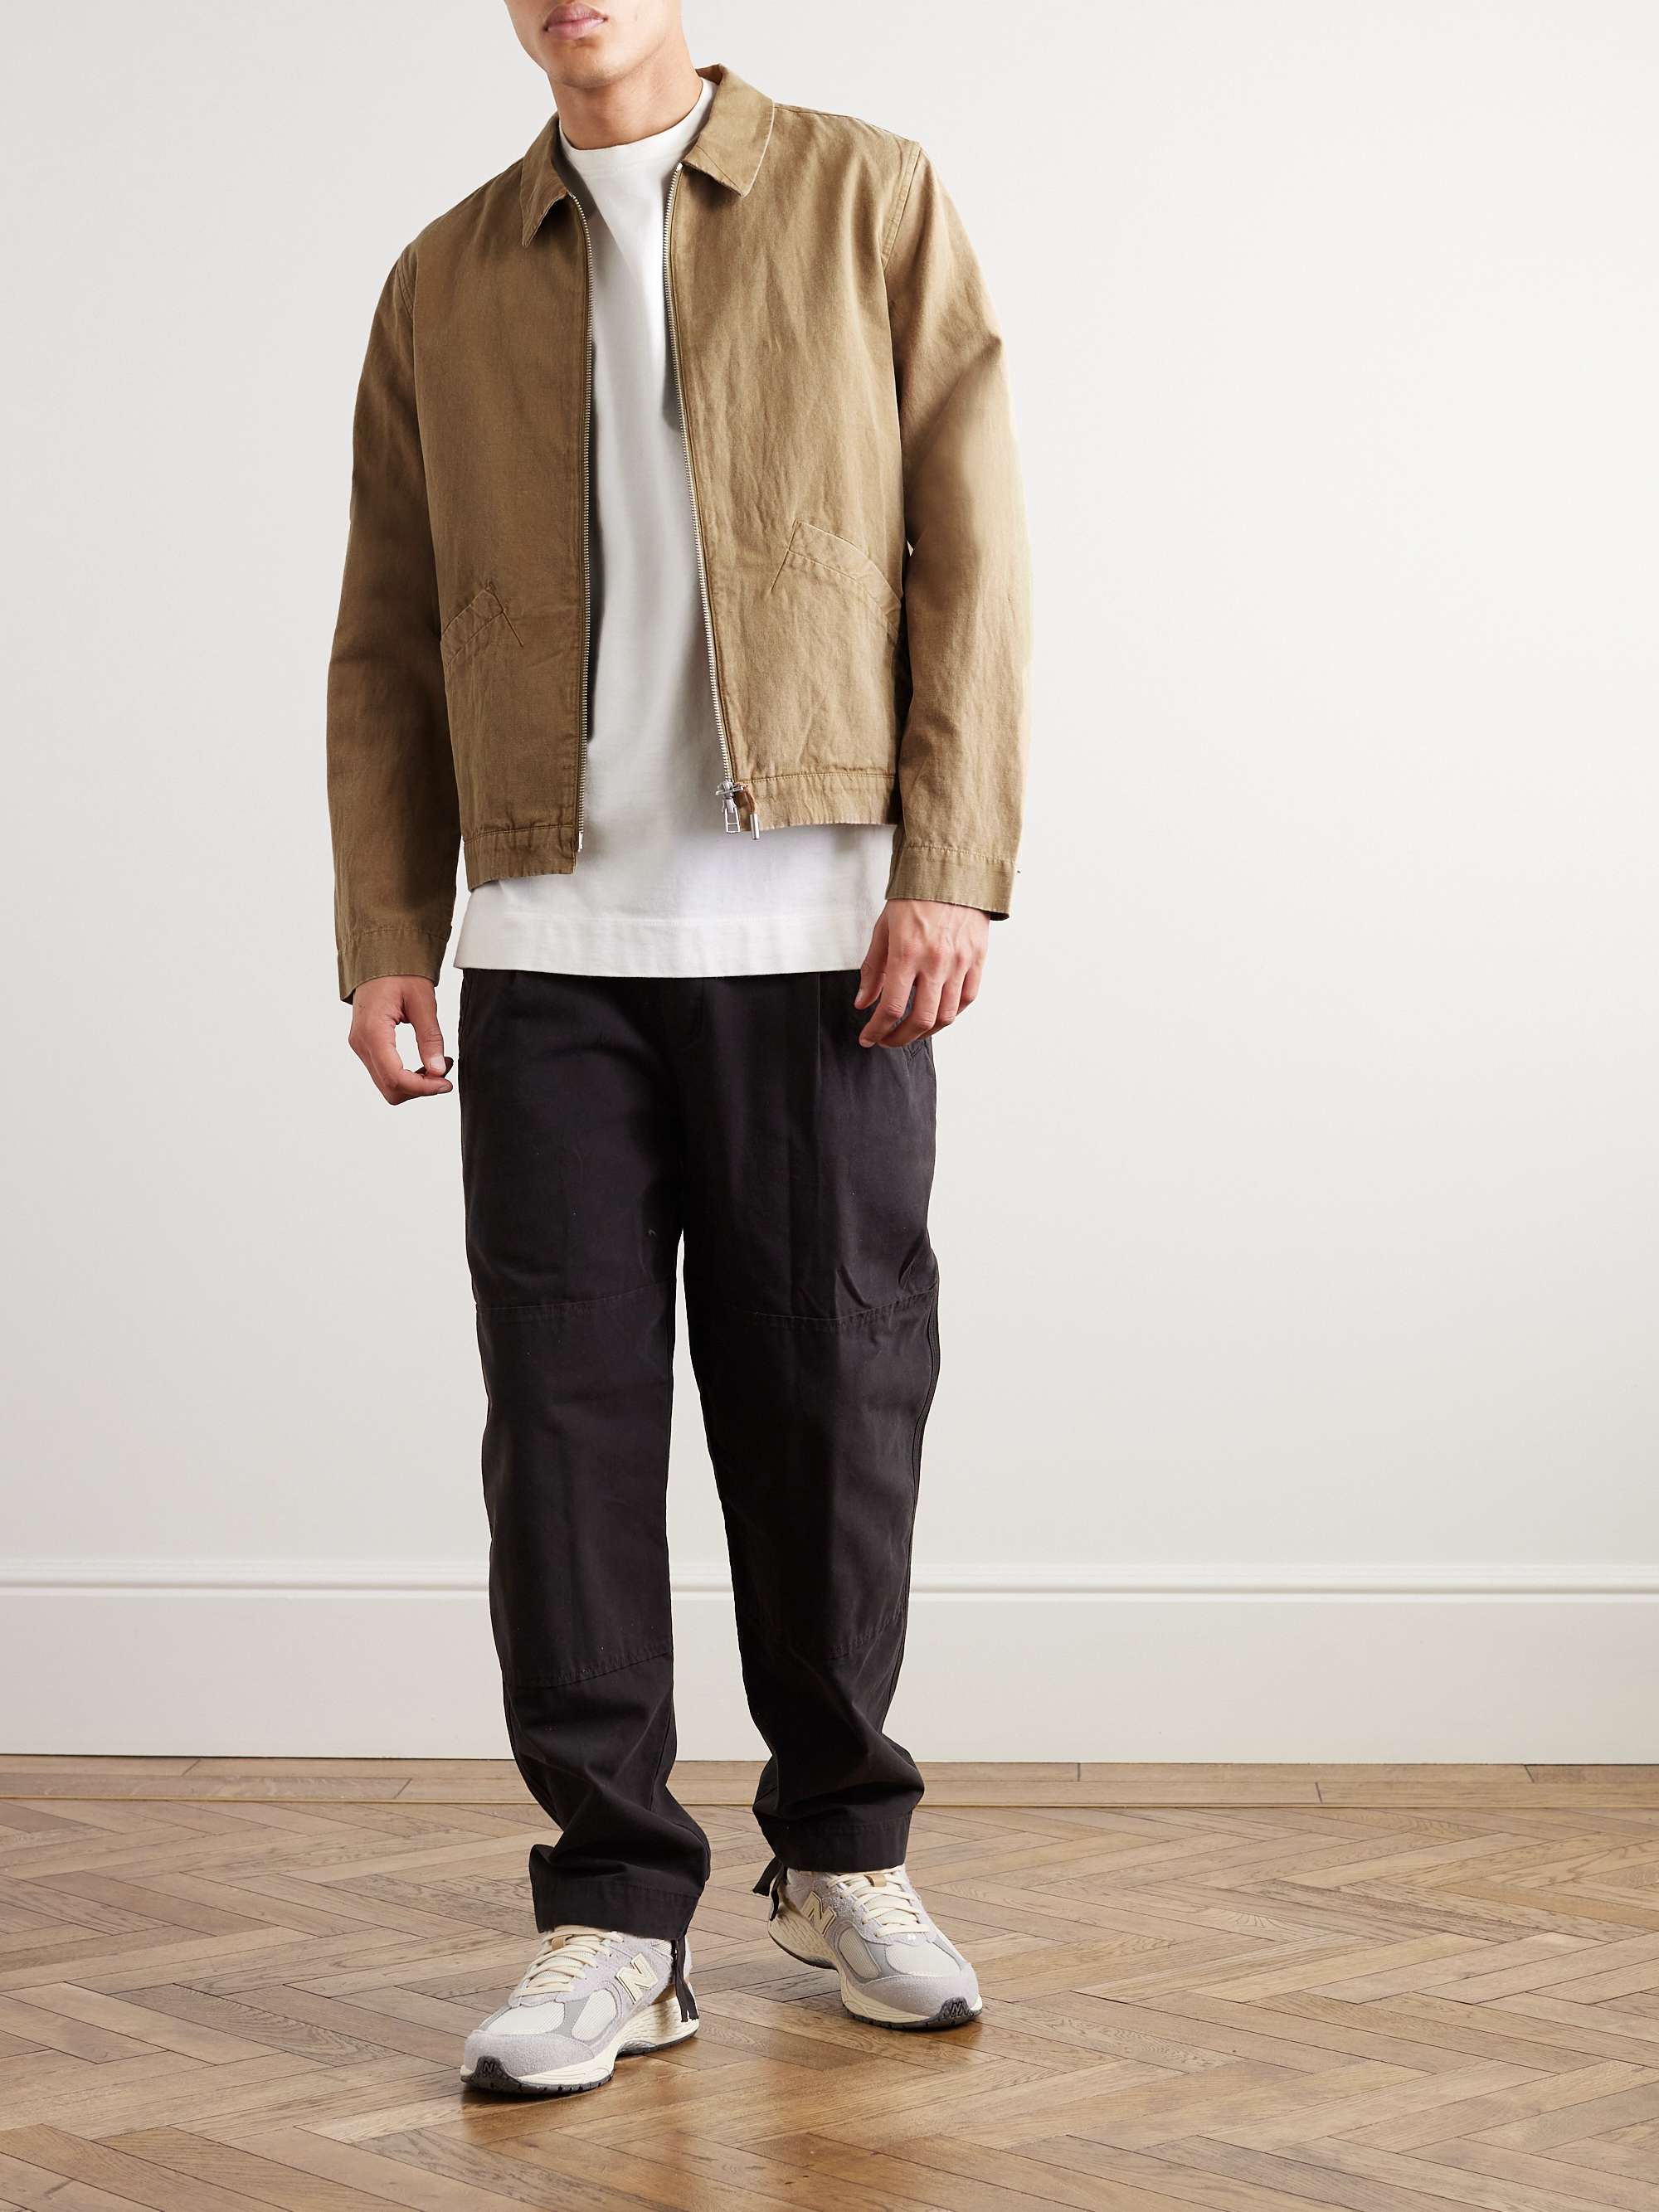 Signal Cotton and Linen-Blend Canvas Blouson Jacket